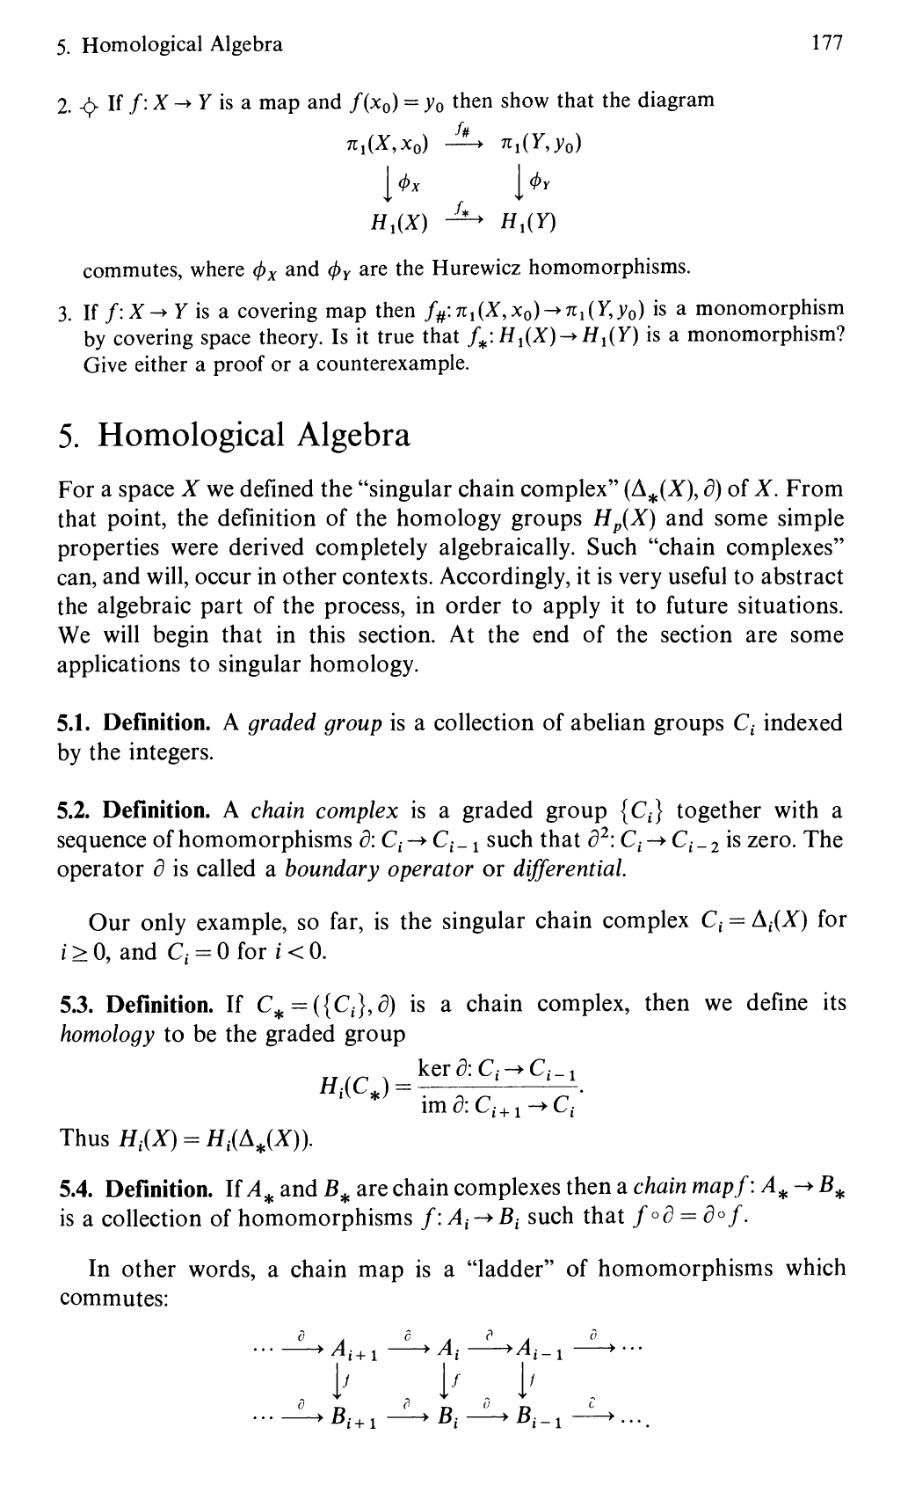 5. Homological Algebra